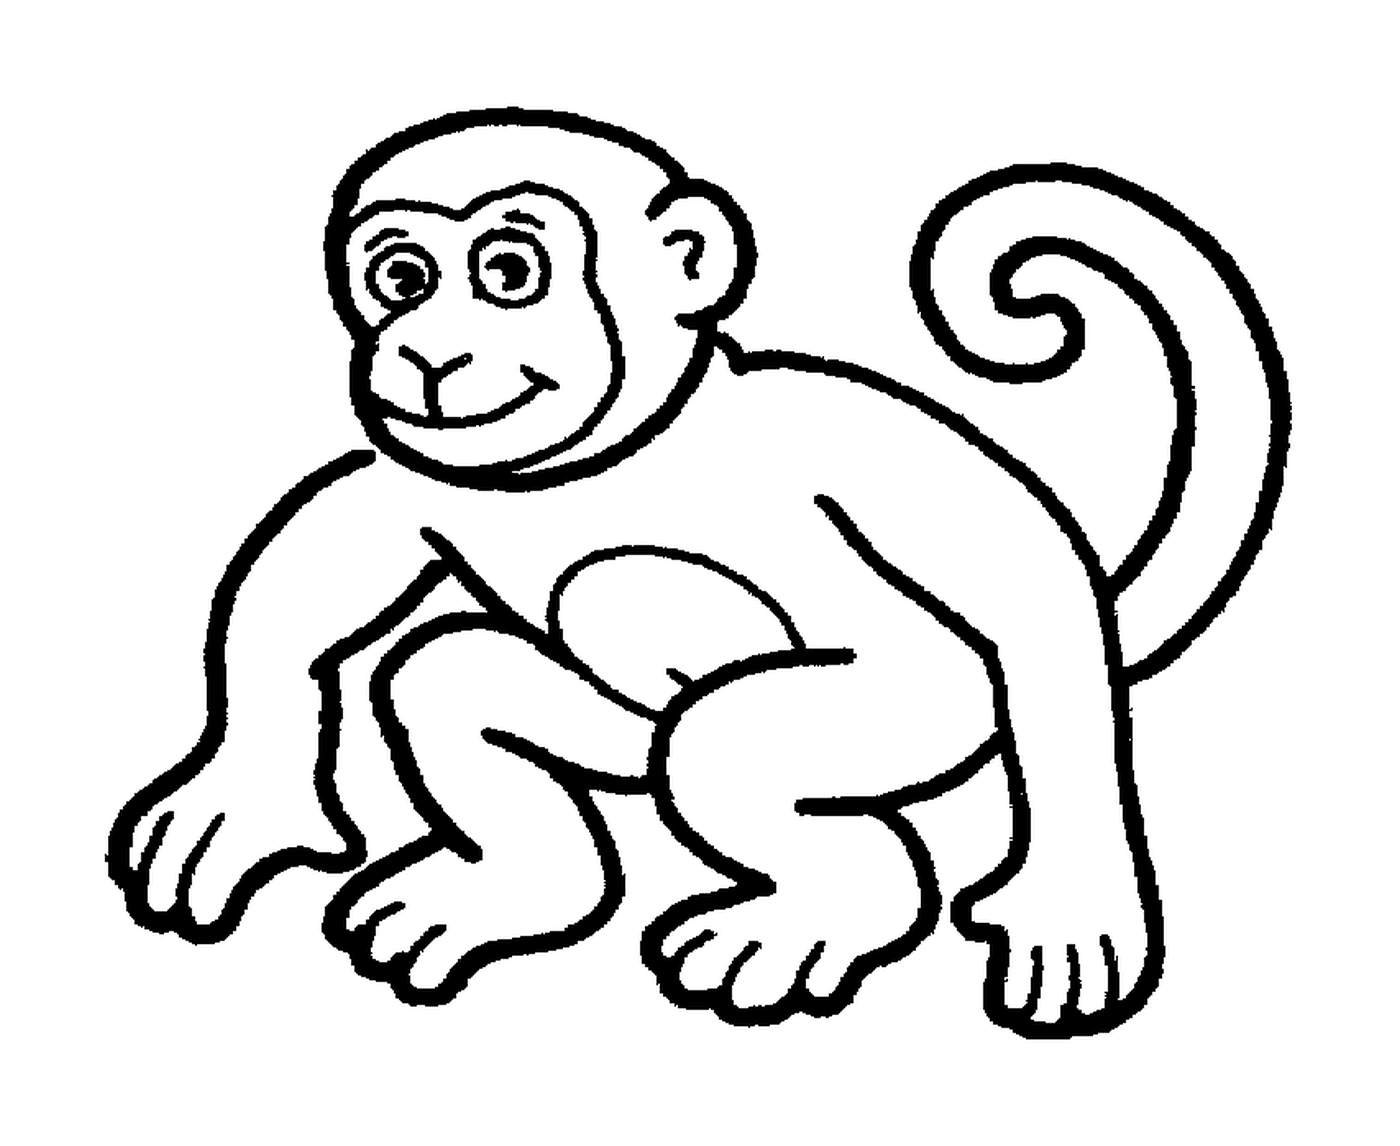  Monkey agiler Spieler 